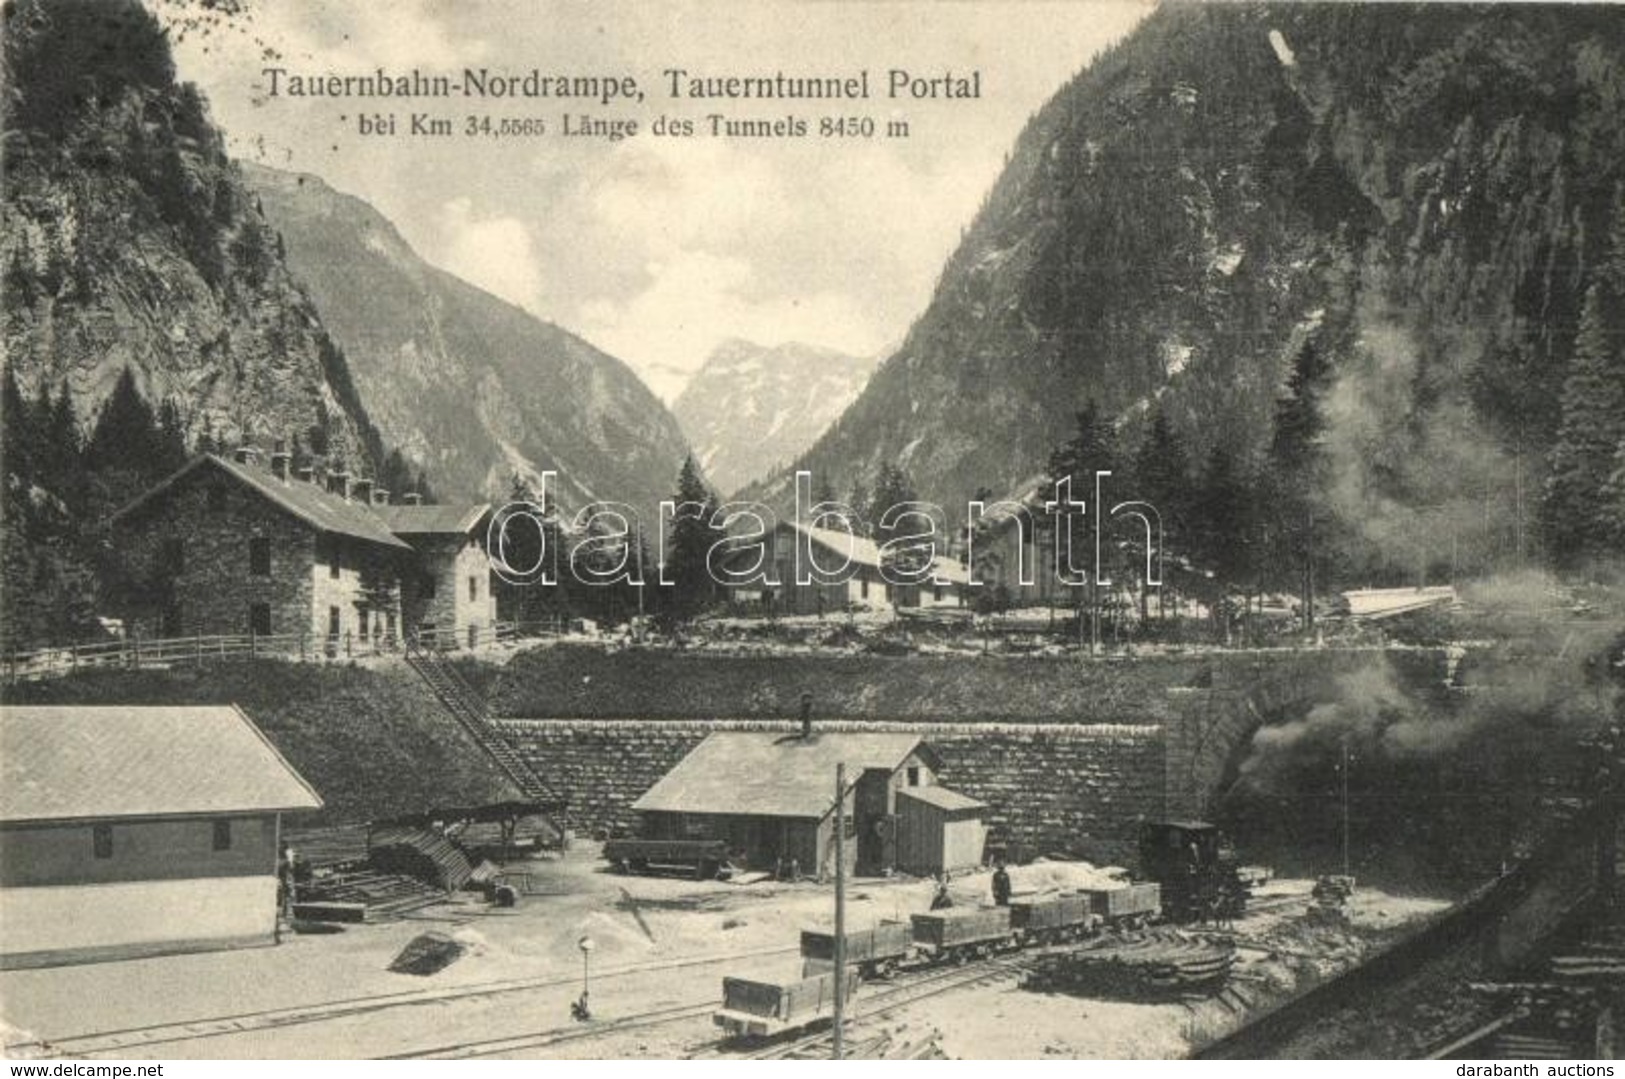 T2/T3 Böckstein (Bad Gastein), Tauernbahn-Nordrampe, Tauerntunnel Portal / Tauern Railway Tunnel, North Entrance, Indust - Unclassified